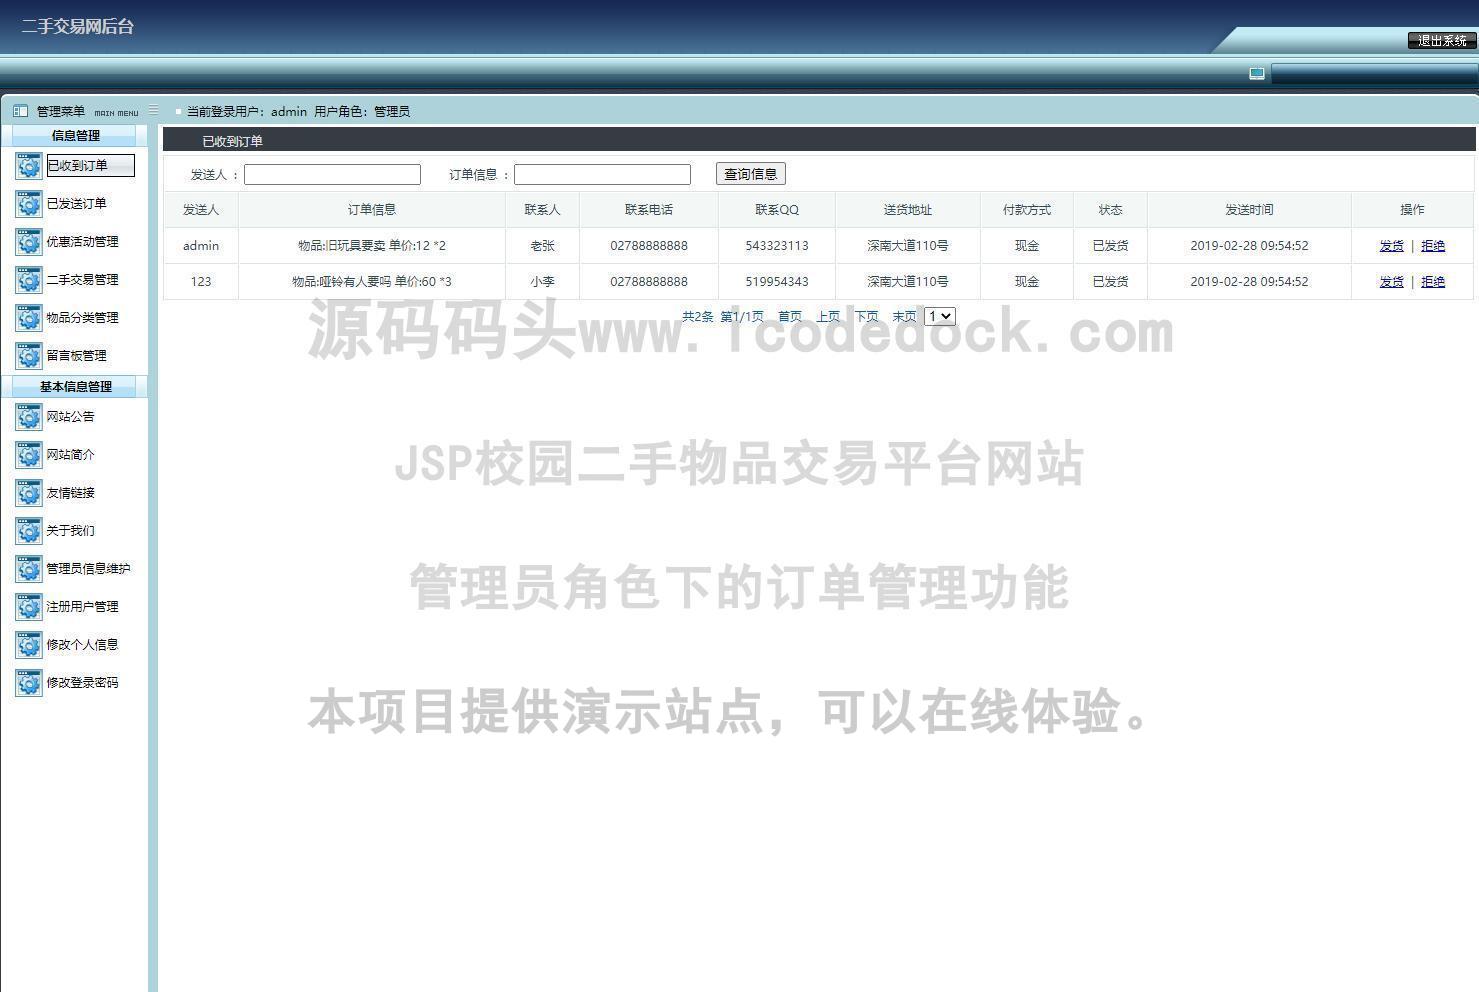 源码码头-JSP校园二手物品交易平台网站-管理员角色-订单管理